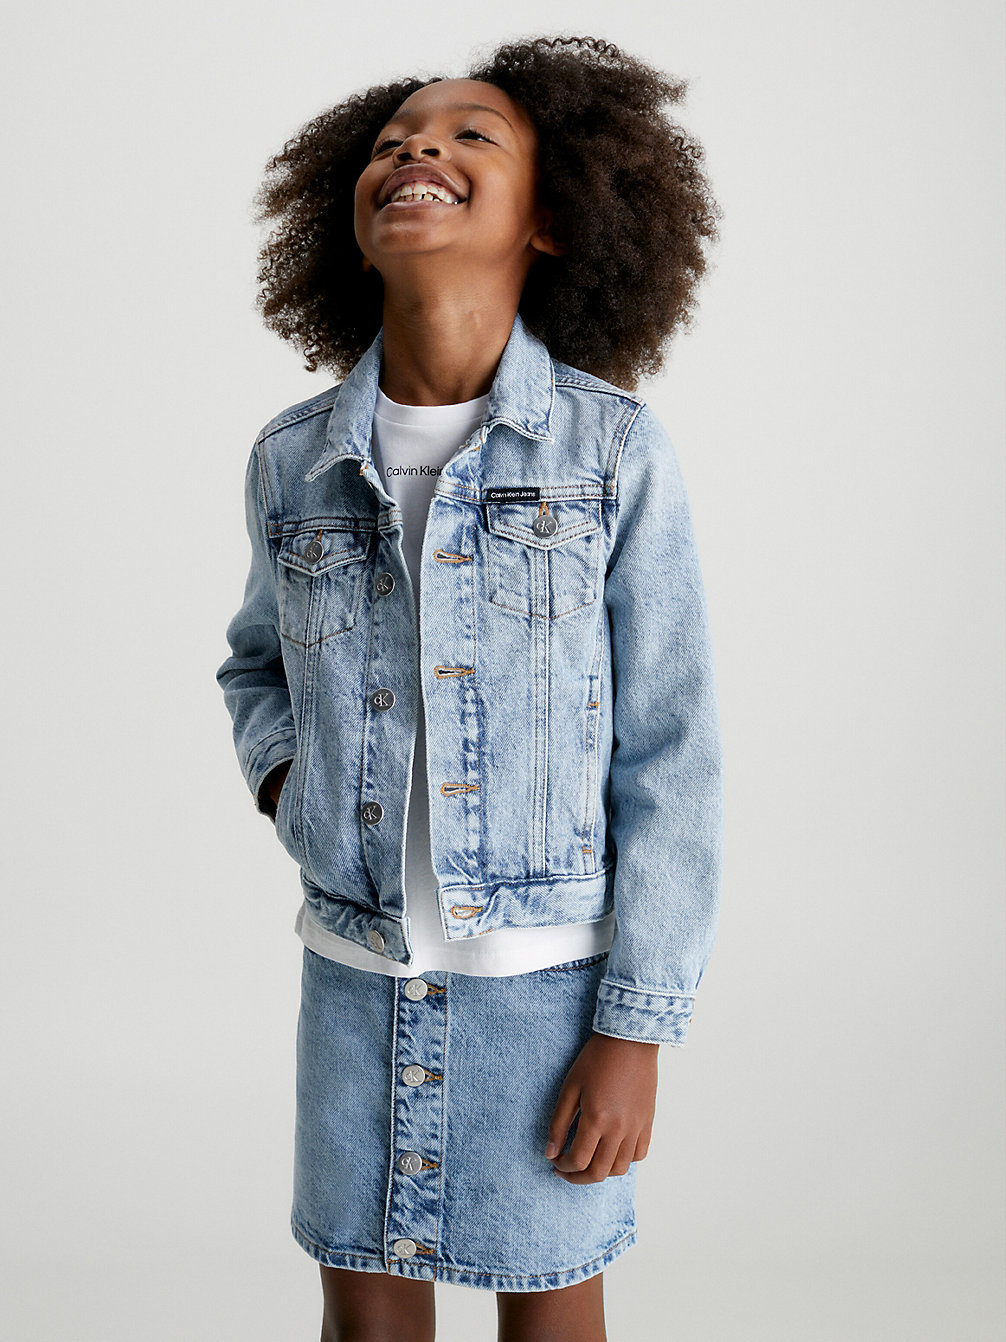 SALTPEPPERLIGHT Denim Jacket undefined girls Calvin Klein